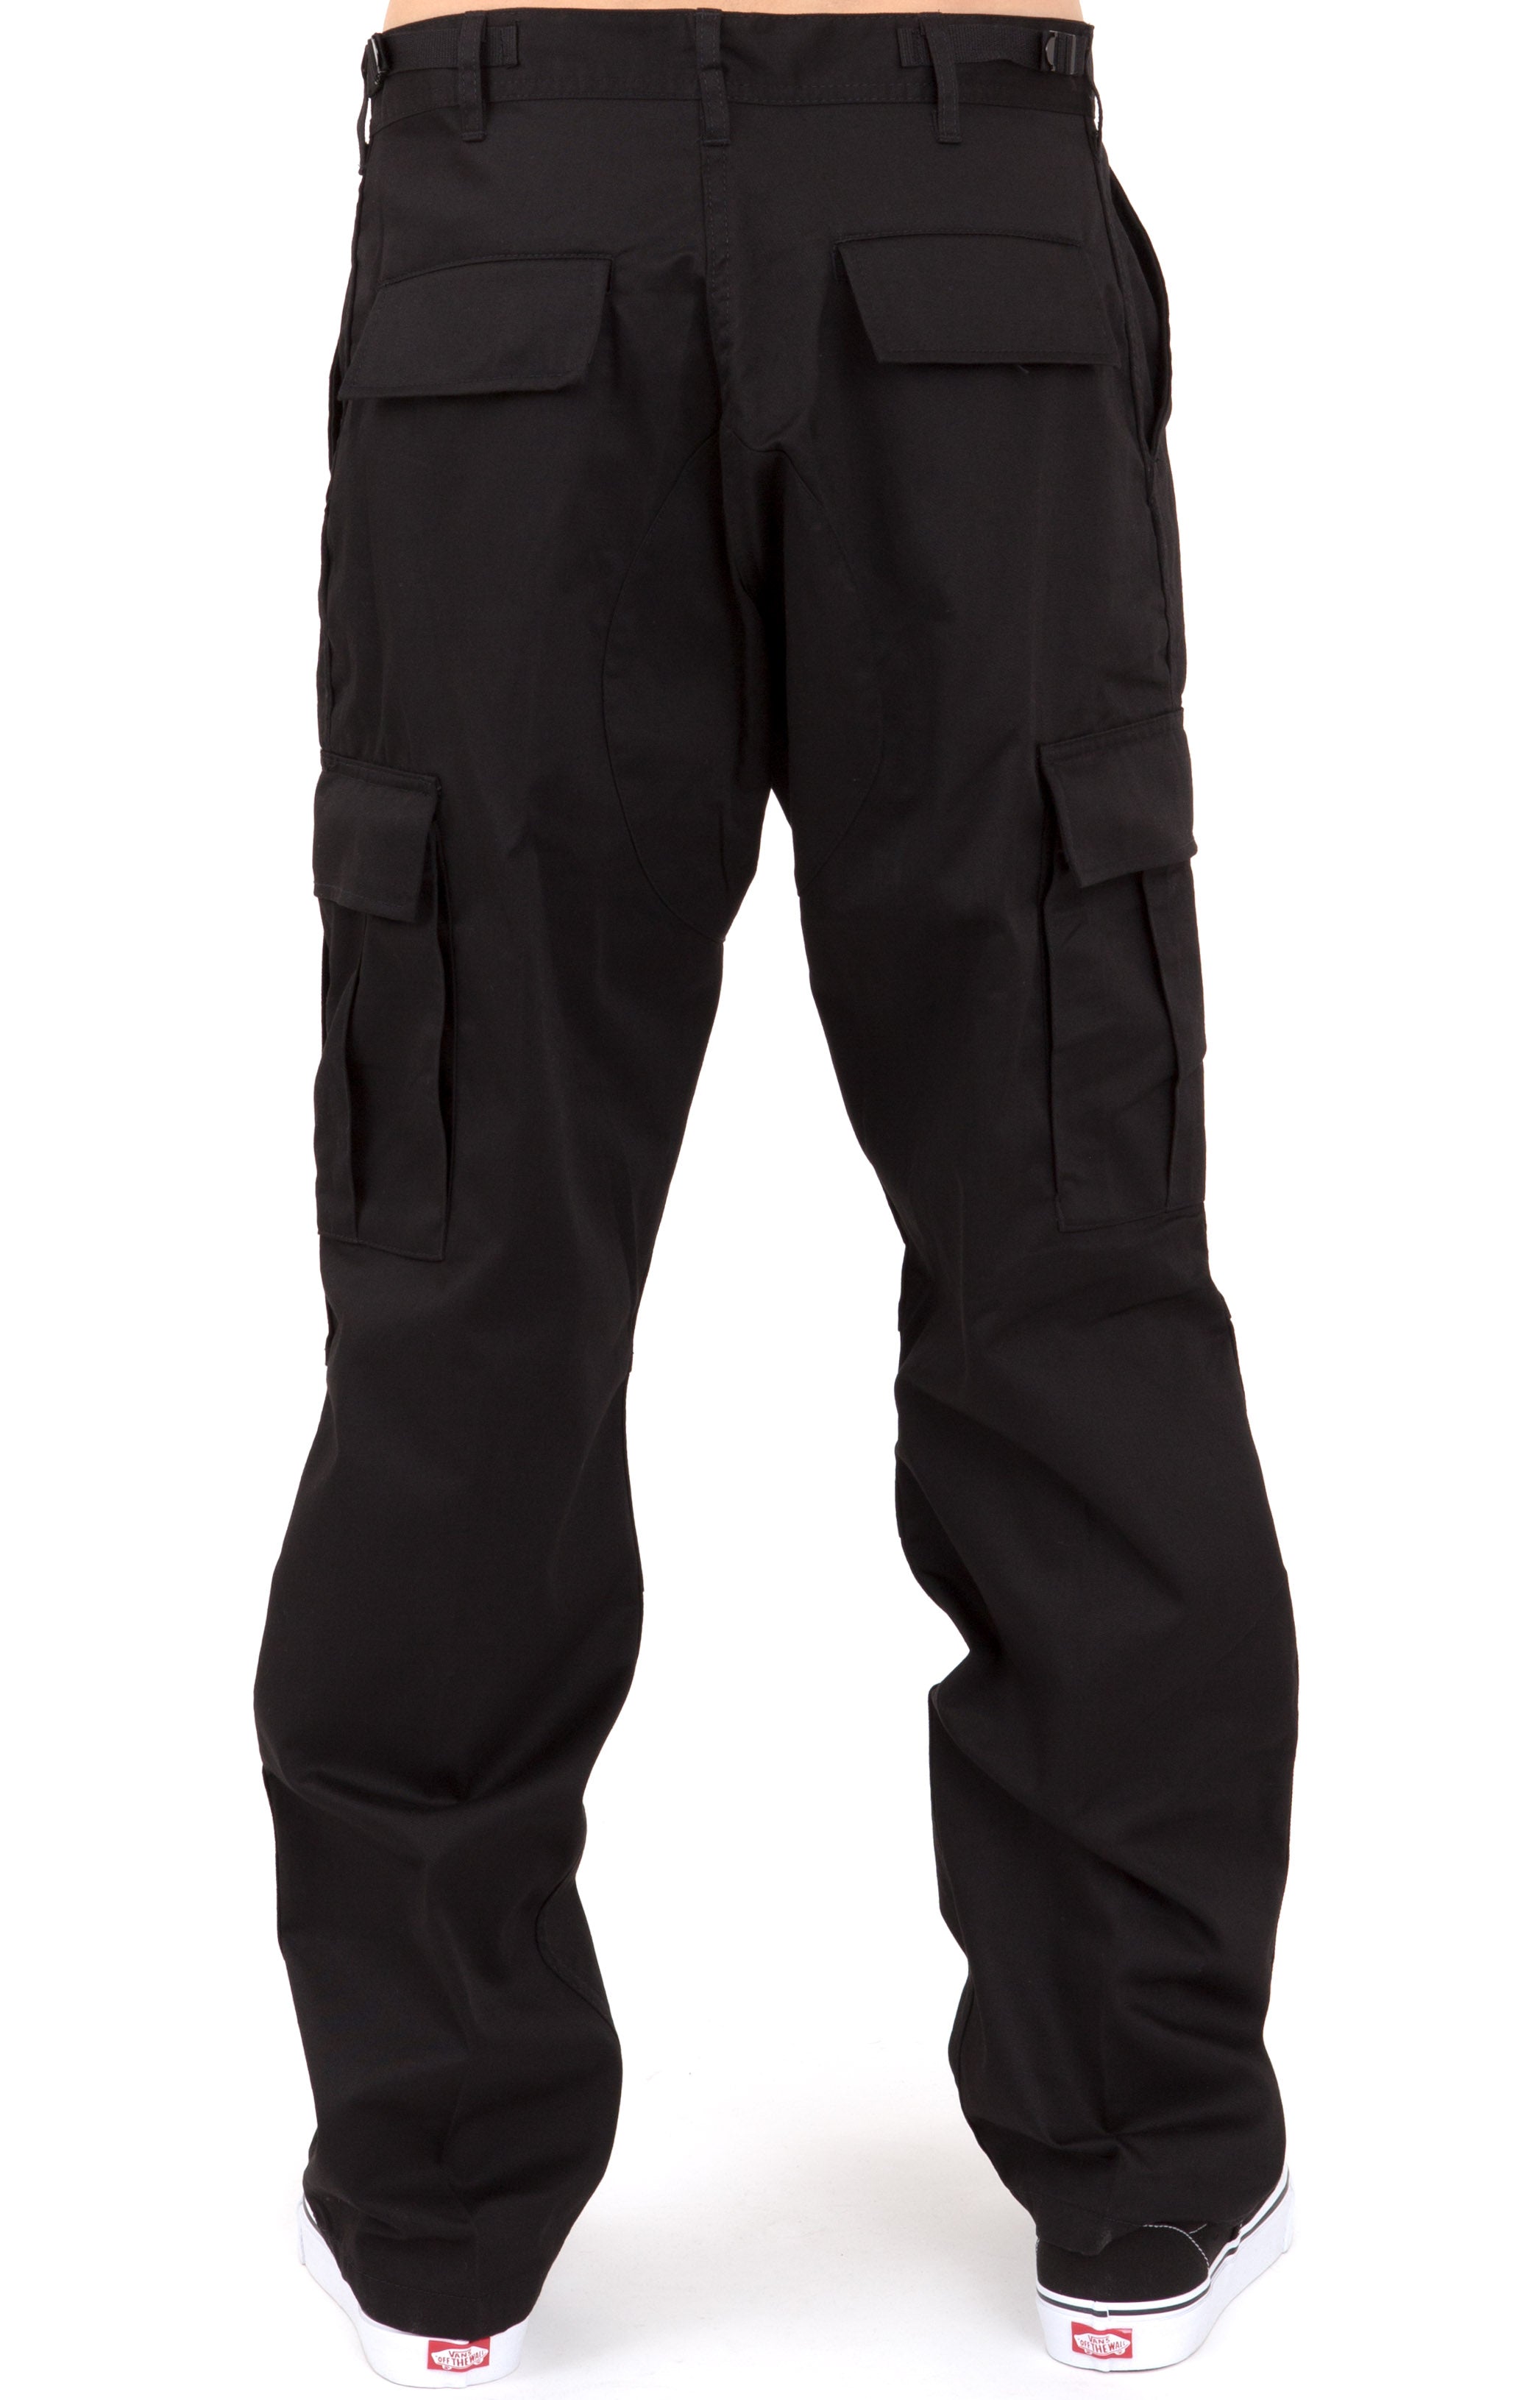 (7971) Rothco Tactical BDU Pants - Black